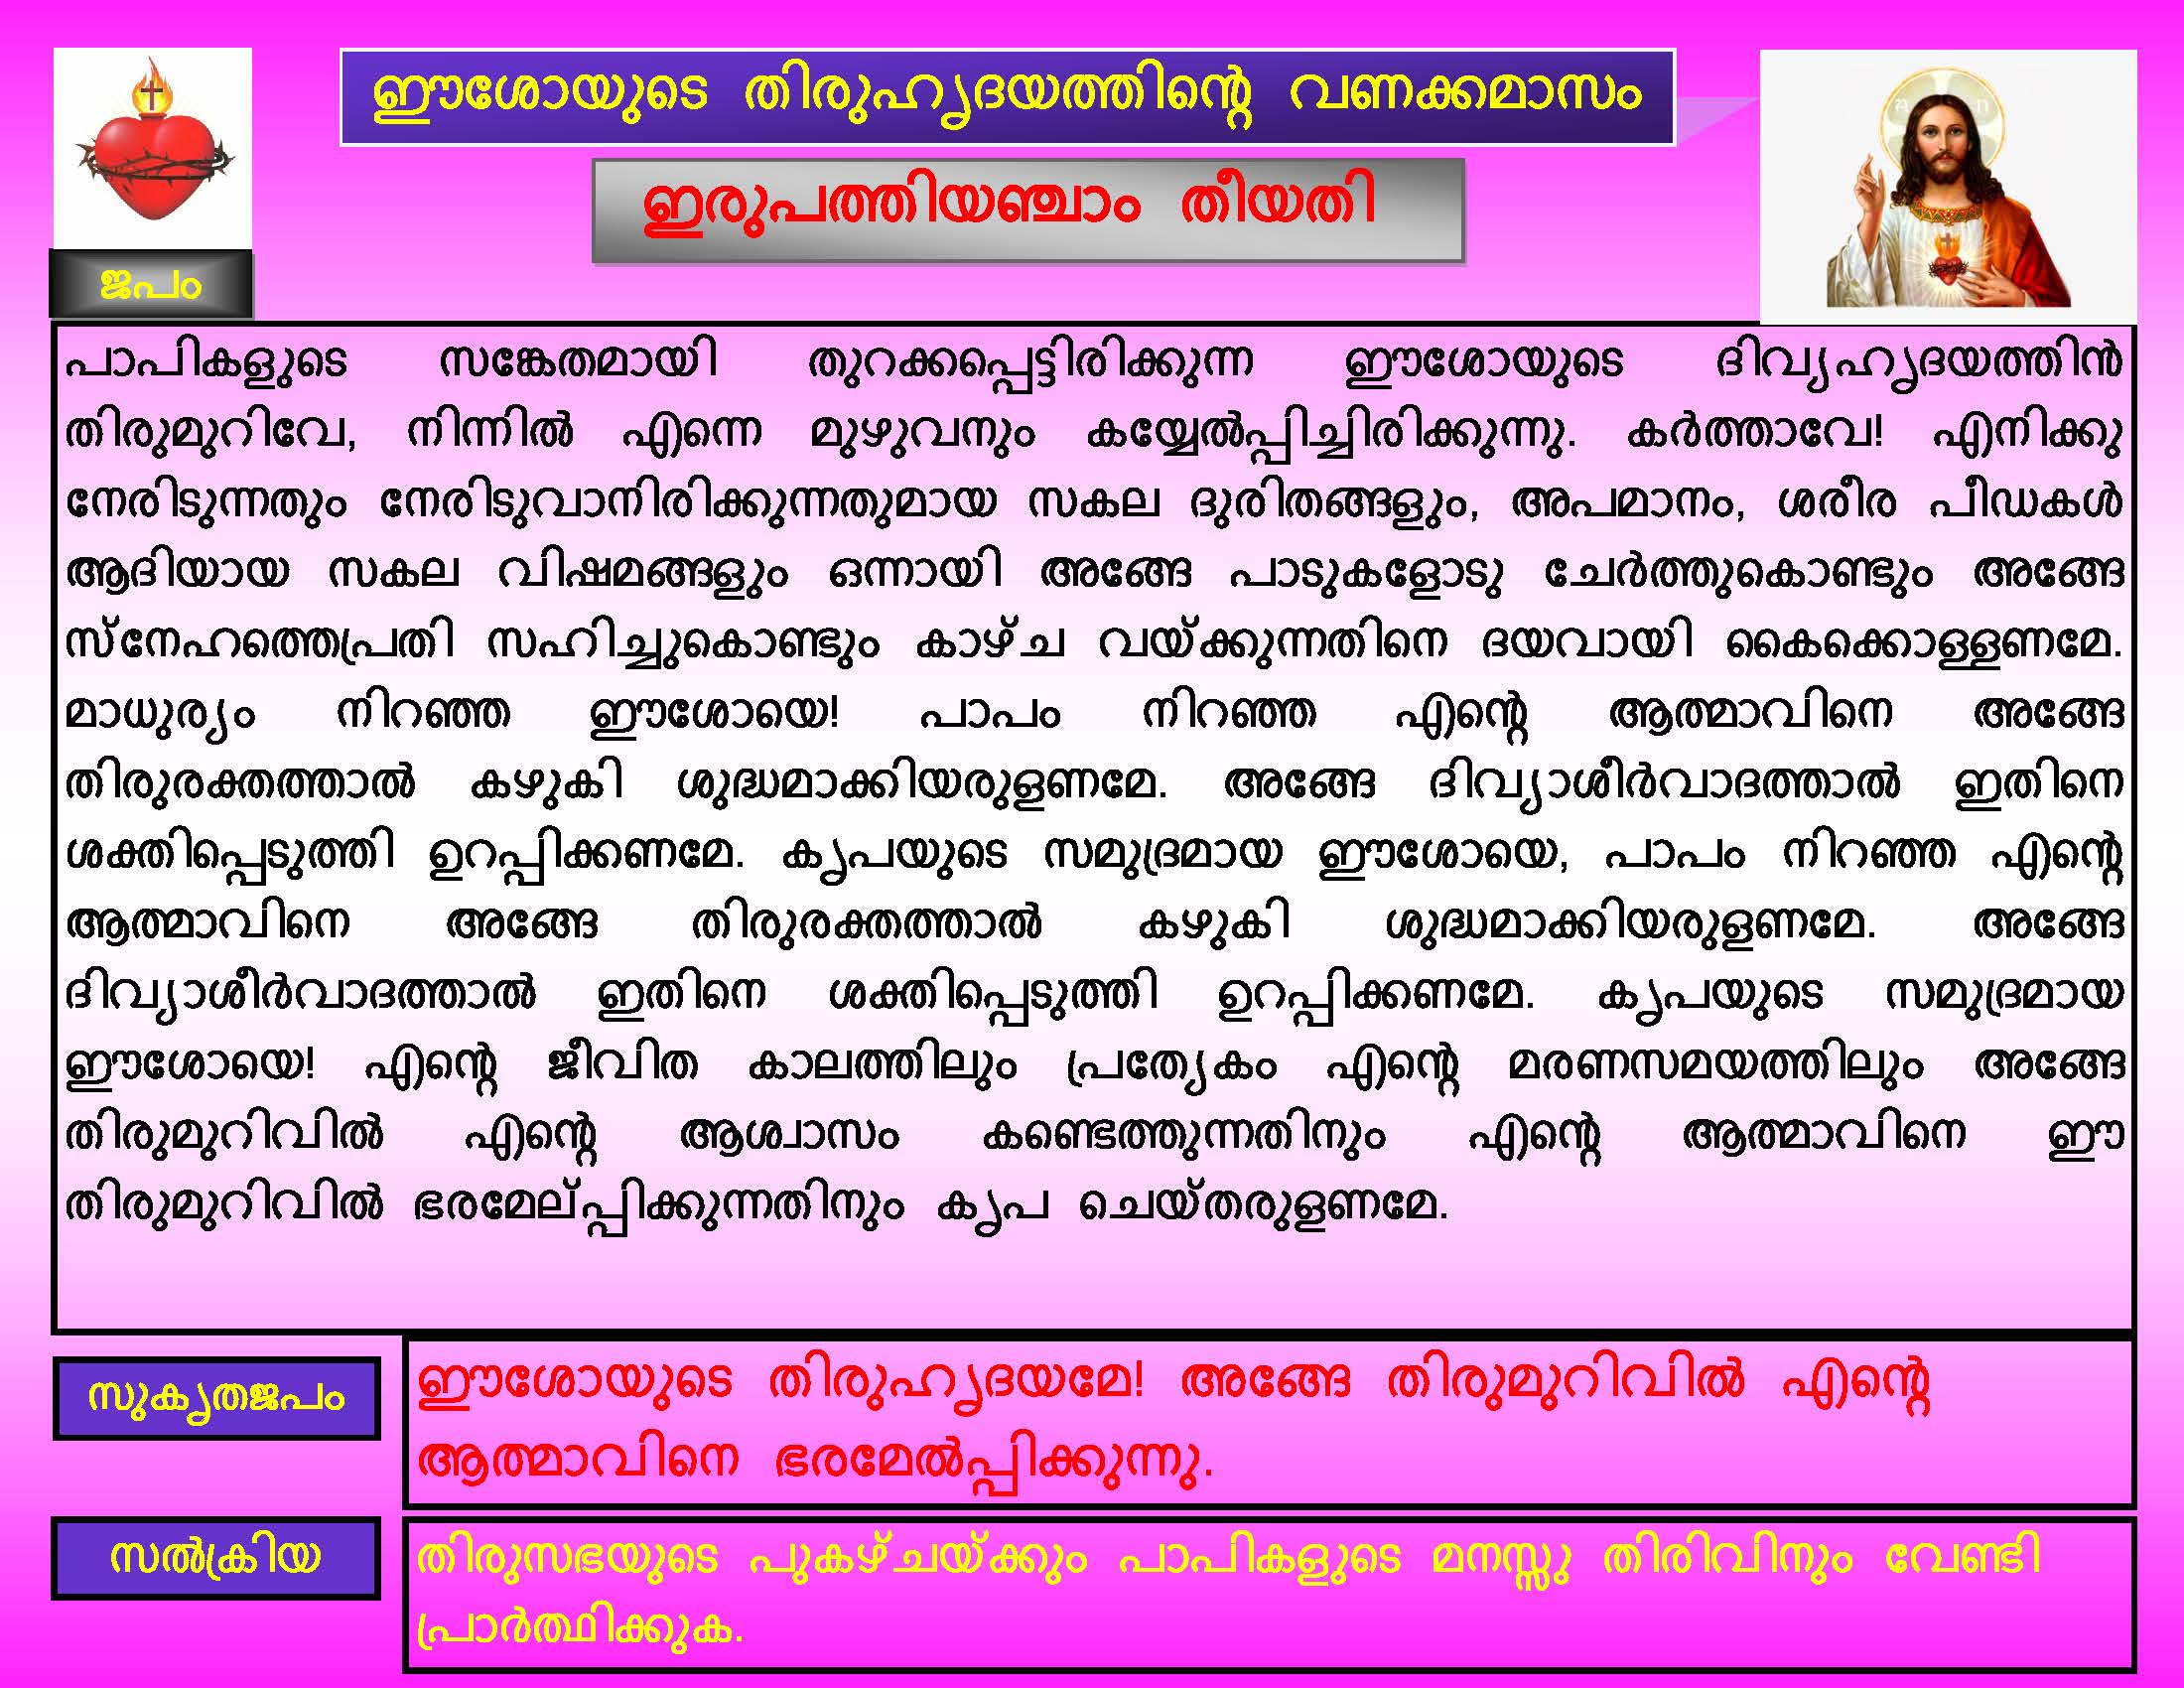 Thiruhrudaya Vanakkamasam - Day 25